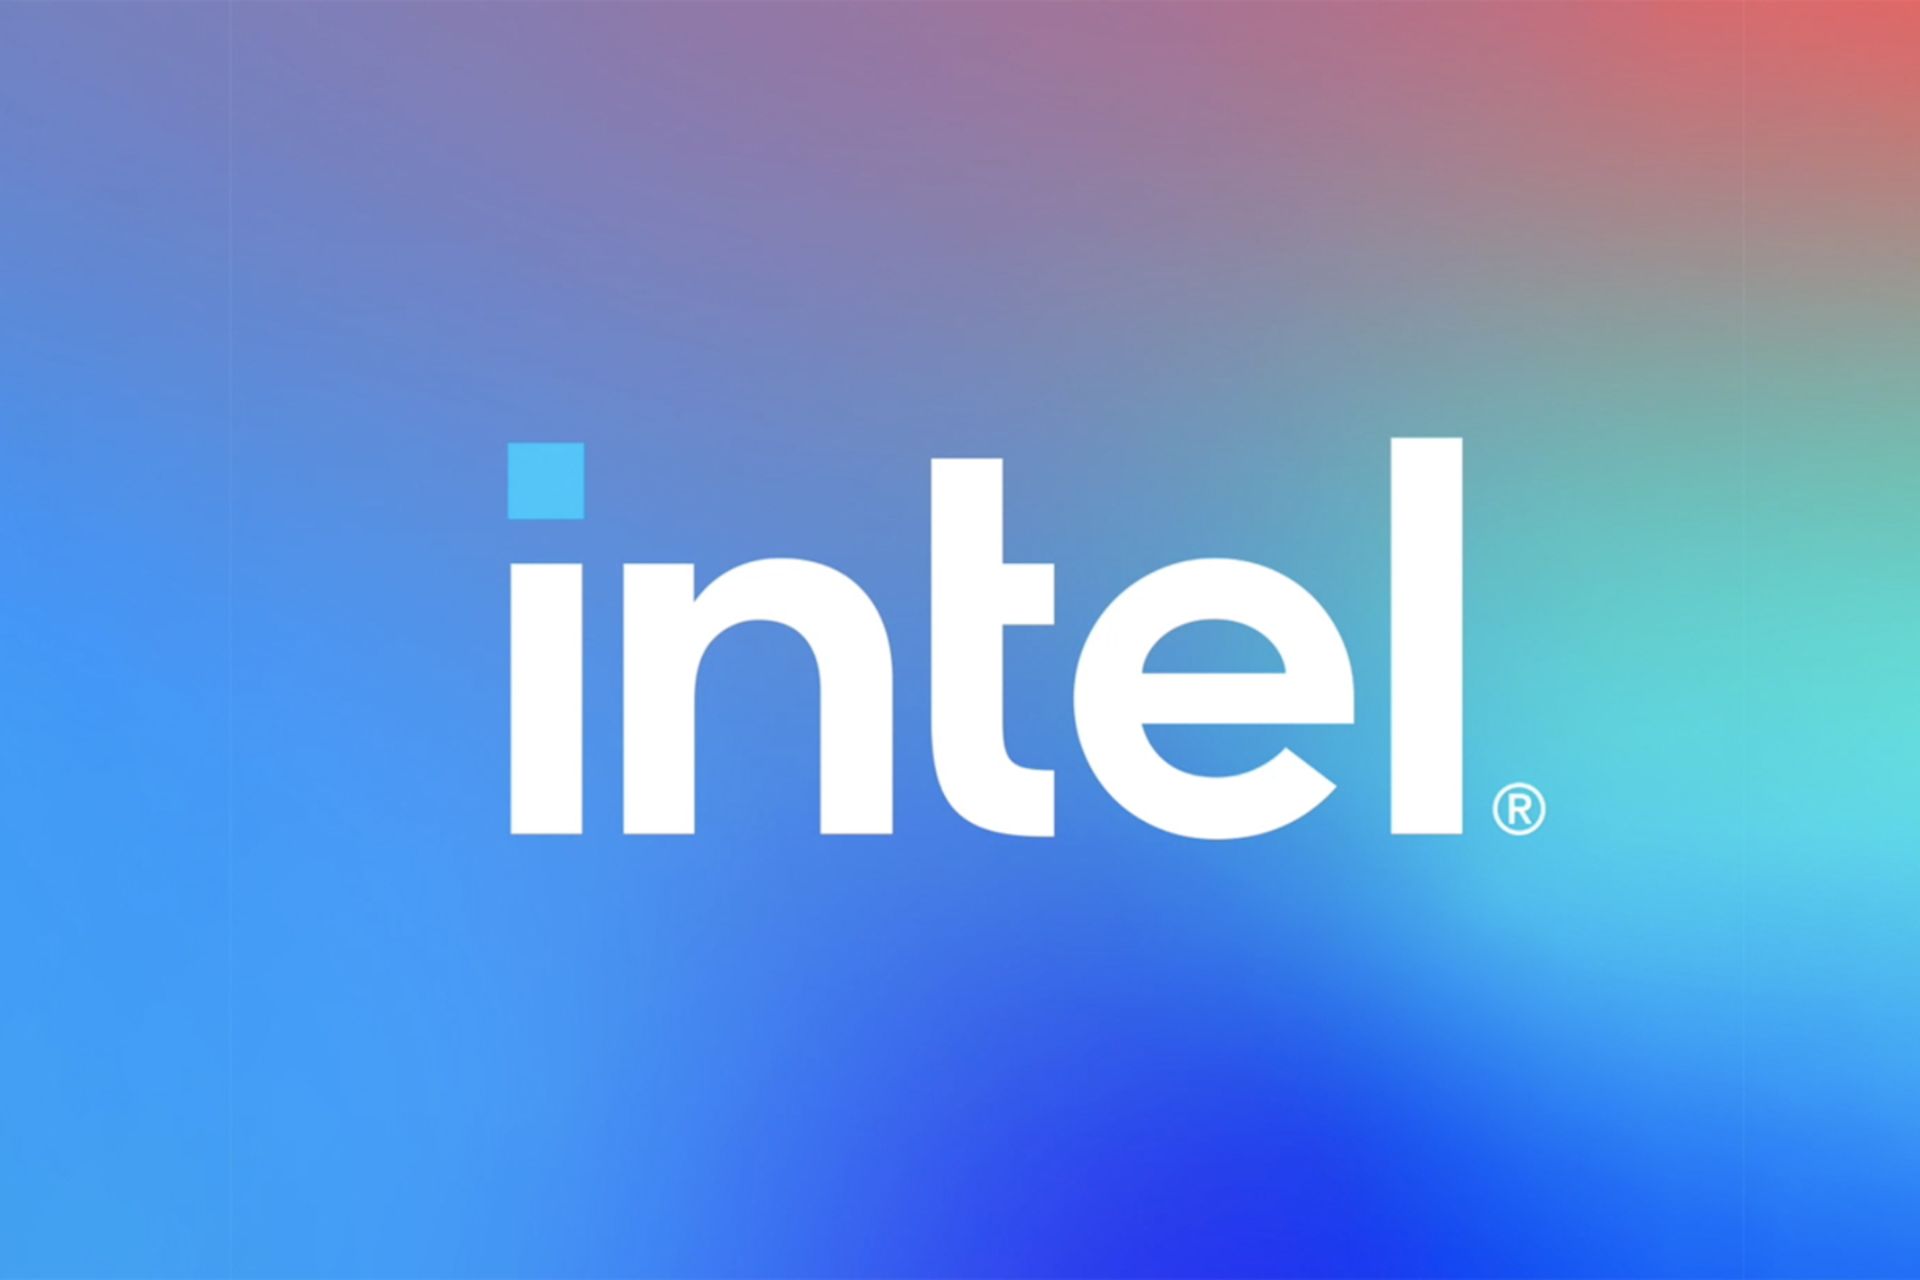 لوگو 2020 اینتل / Intel